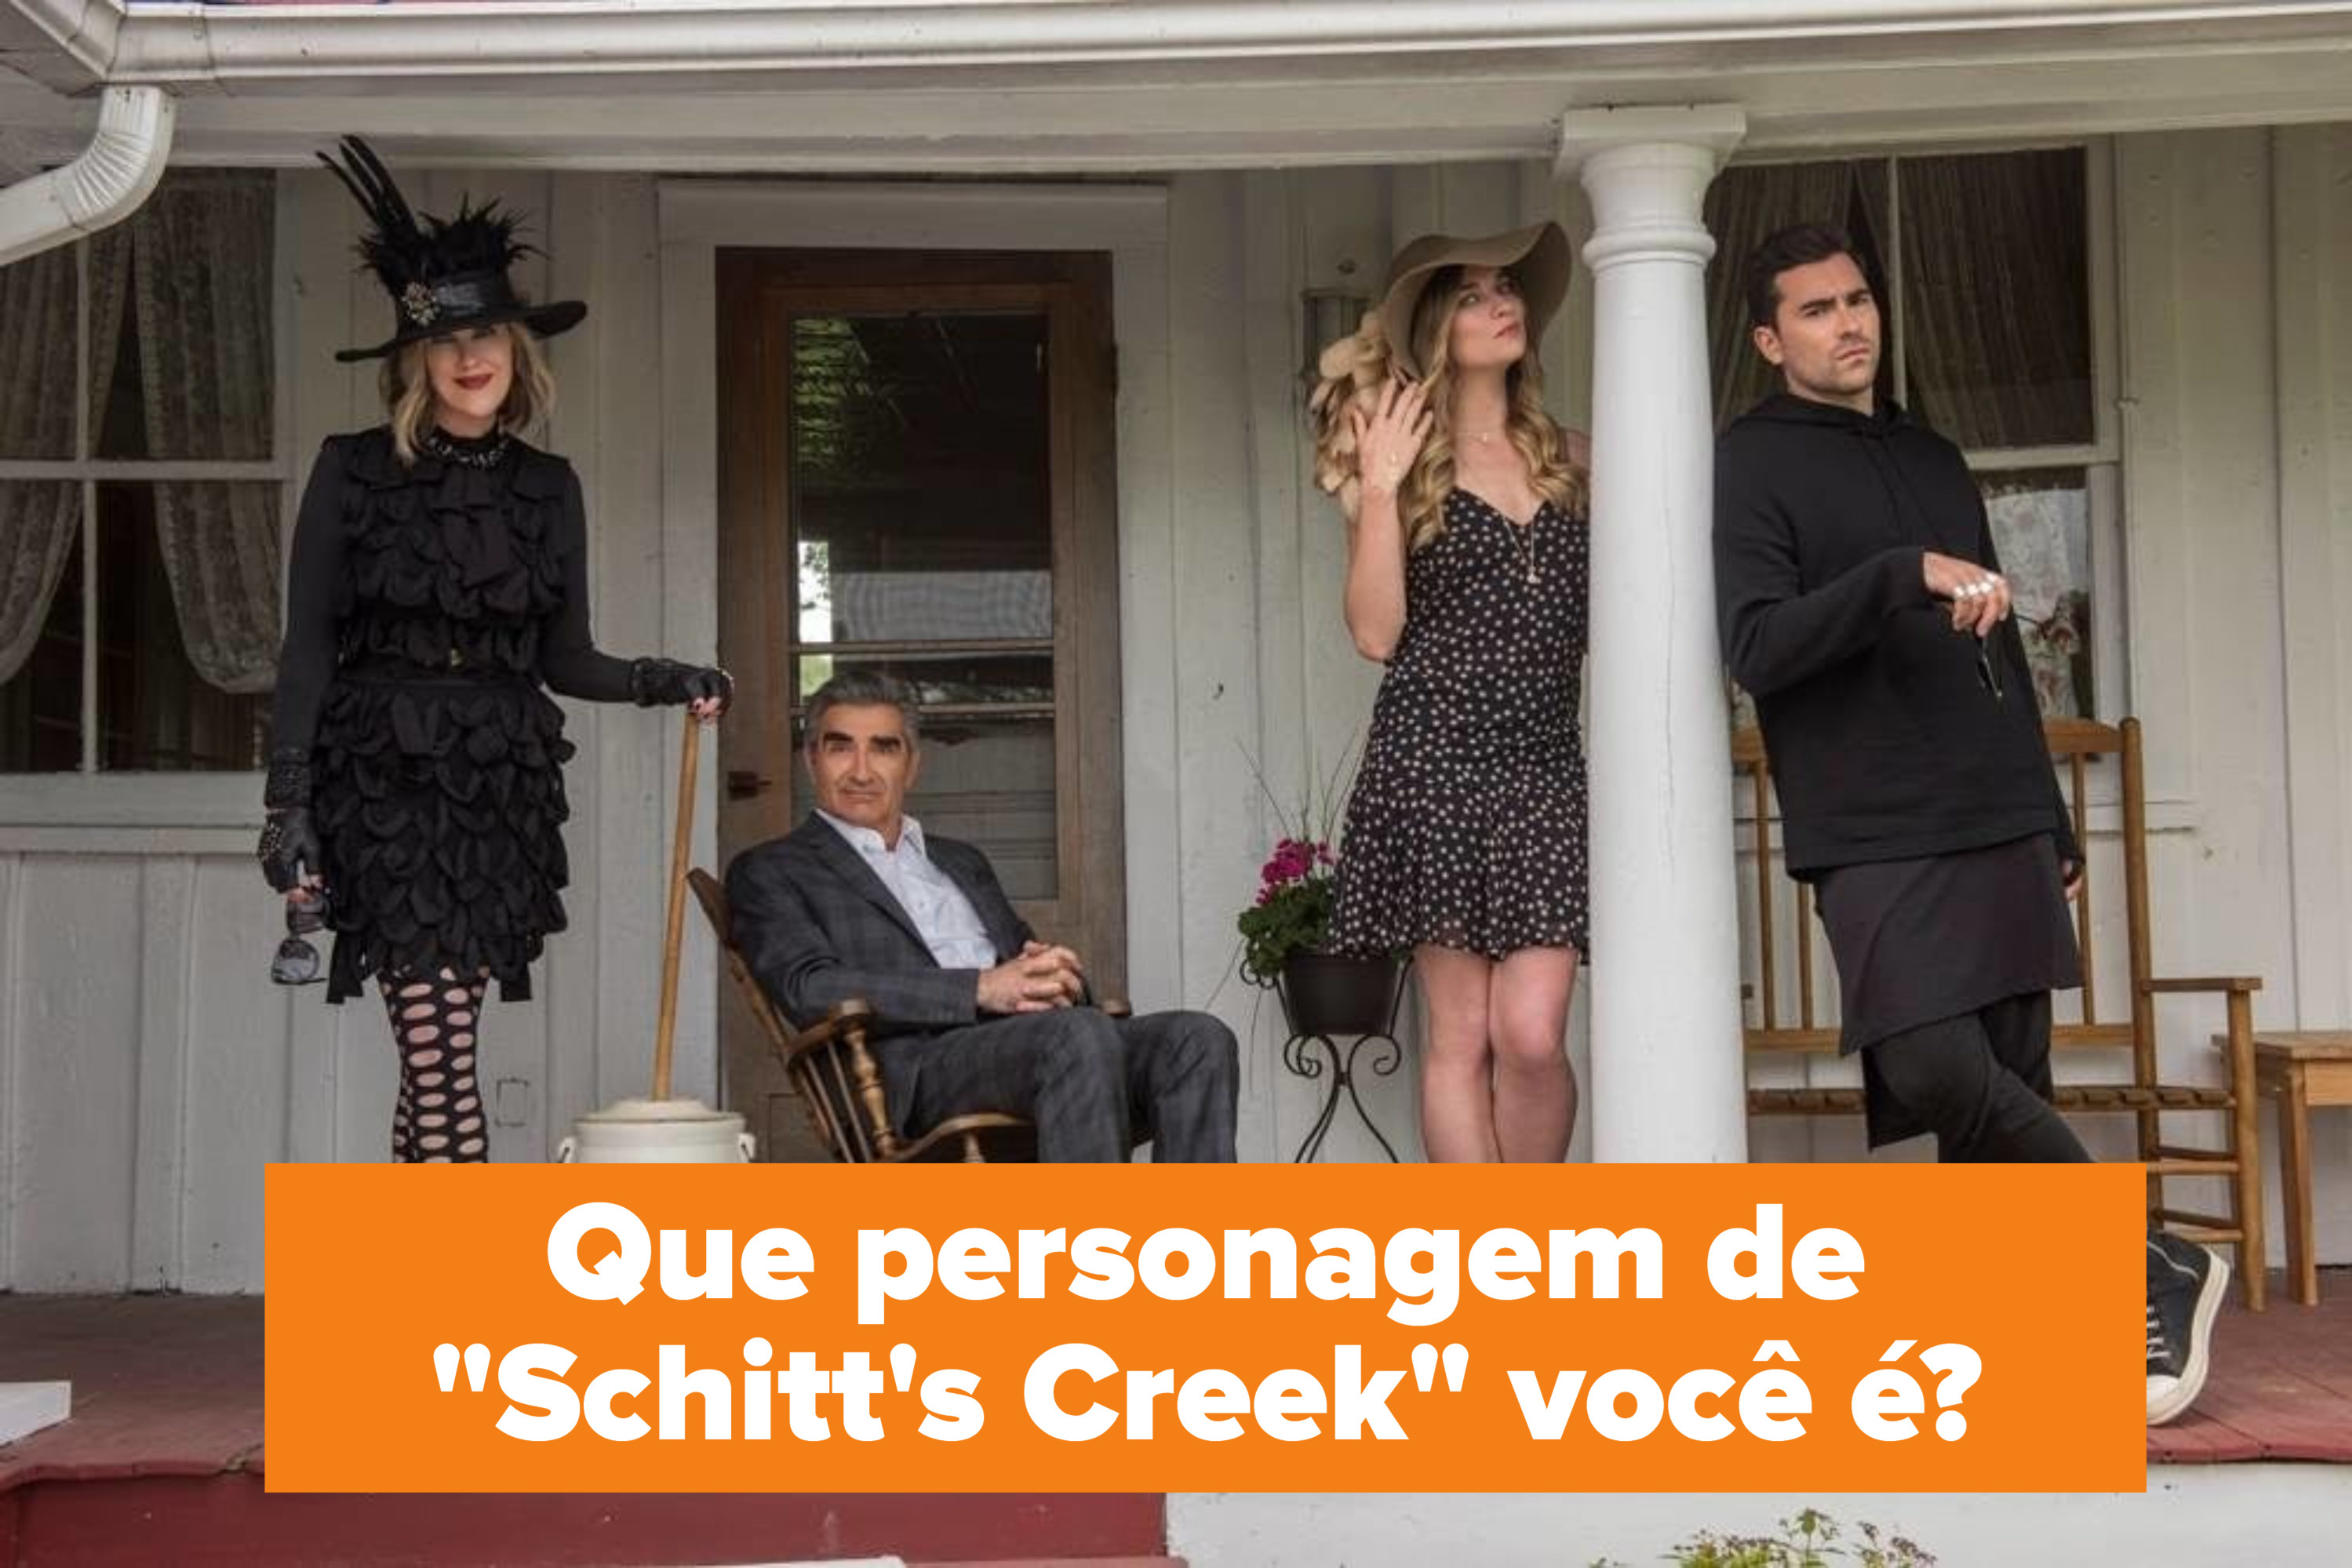 Foto dos personagens de "Schitt's Creek" e a pergunta: "Que personagem de 'Schitt's Creek' você é?"